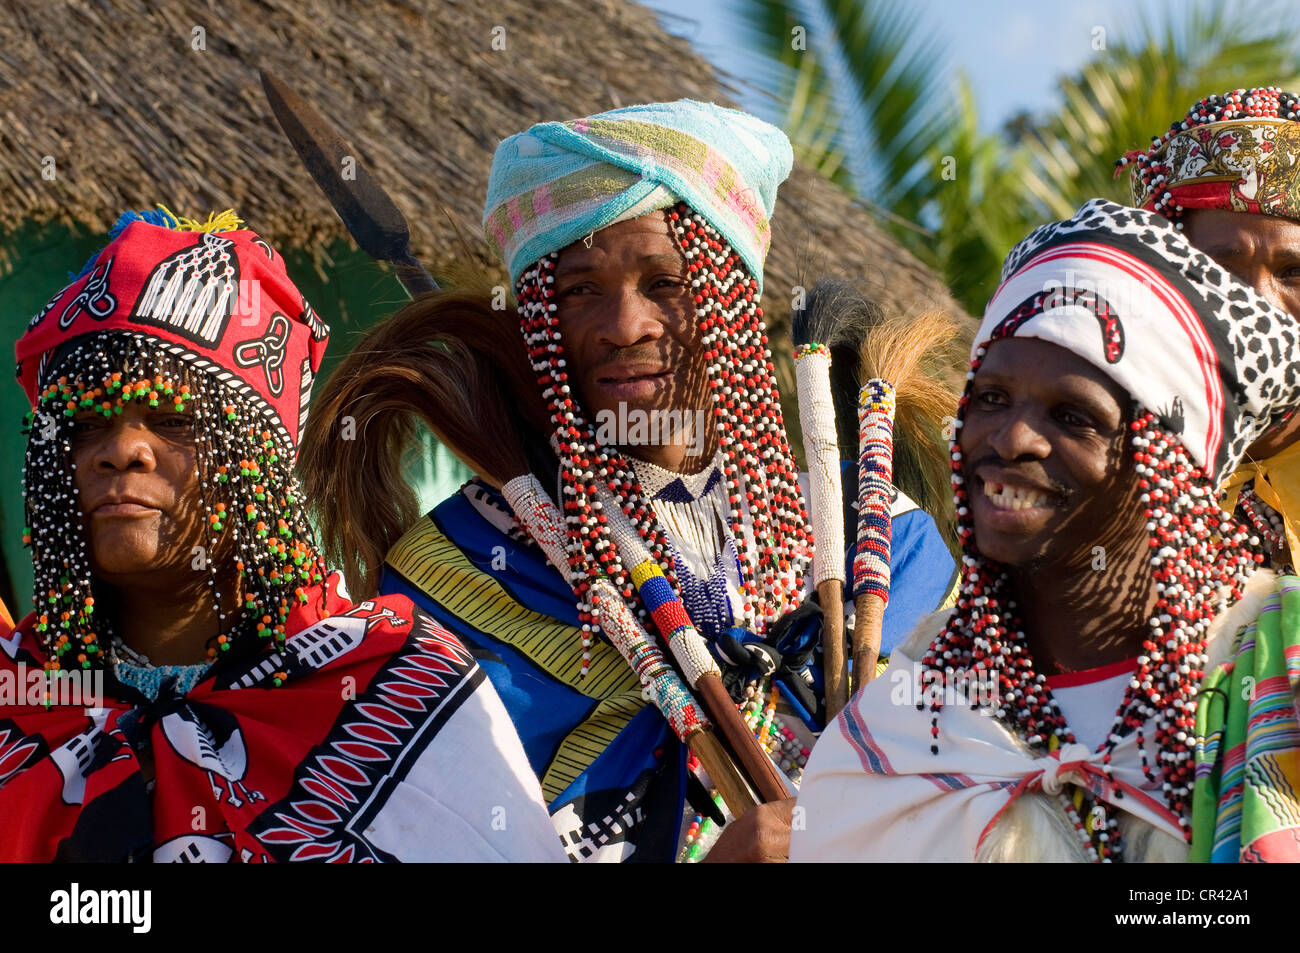 Traditionell gekleideten Xhosa-Volkes, während die Sangoma oder Zauberer Festival, Wild Coast, Eastern Cape, Südafrika, Afrika Stockfoto